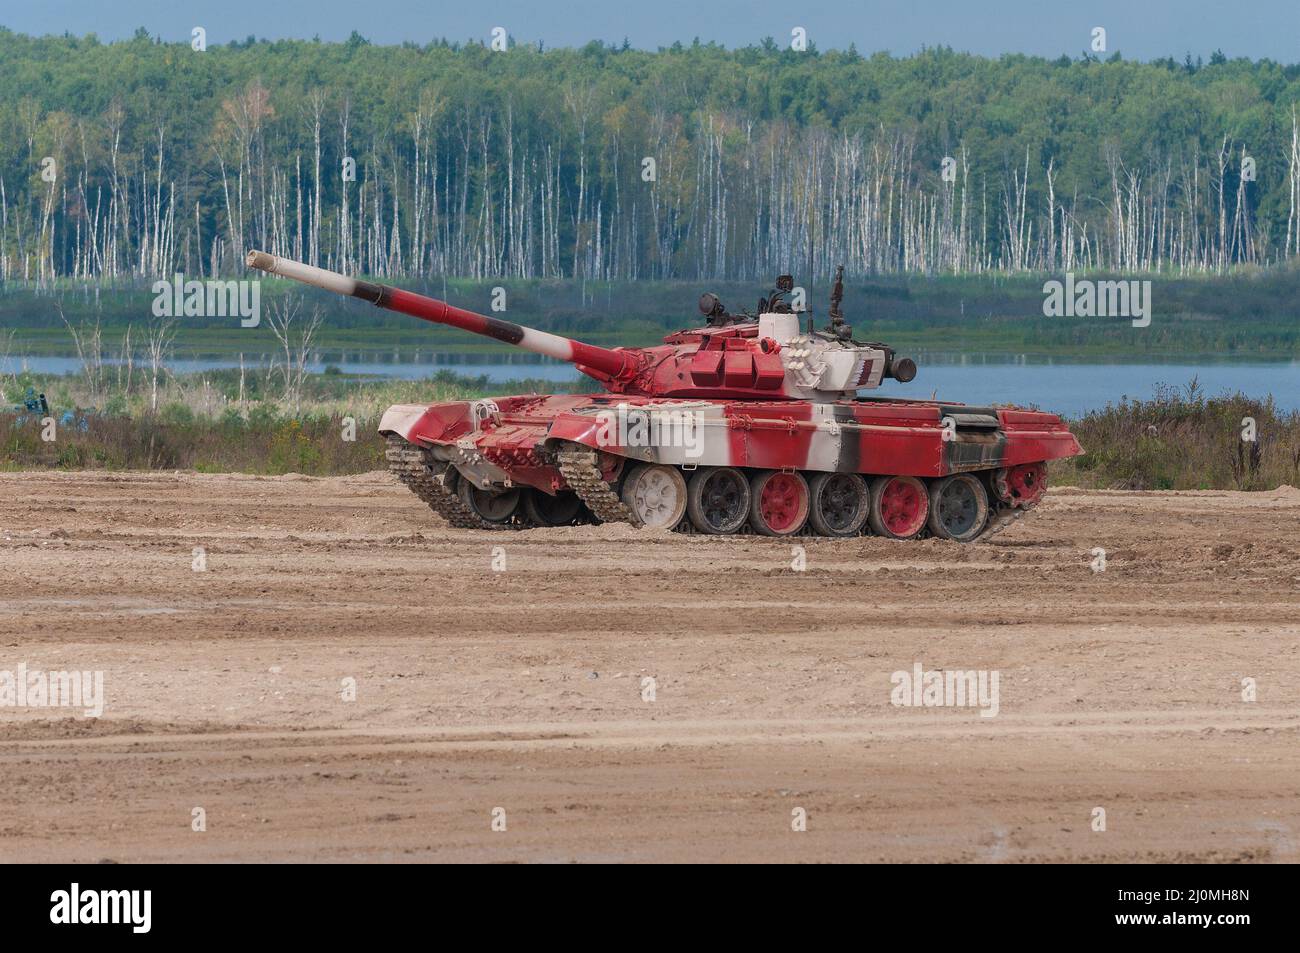 ALABINO, RUSSIE - 25 AOÛT 2020 : char T-72B3 de l'équipe russe avant la compétition de biathlon aux Jeux de guerre, Alabino Banque D'Images